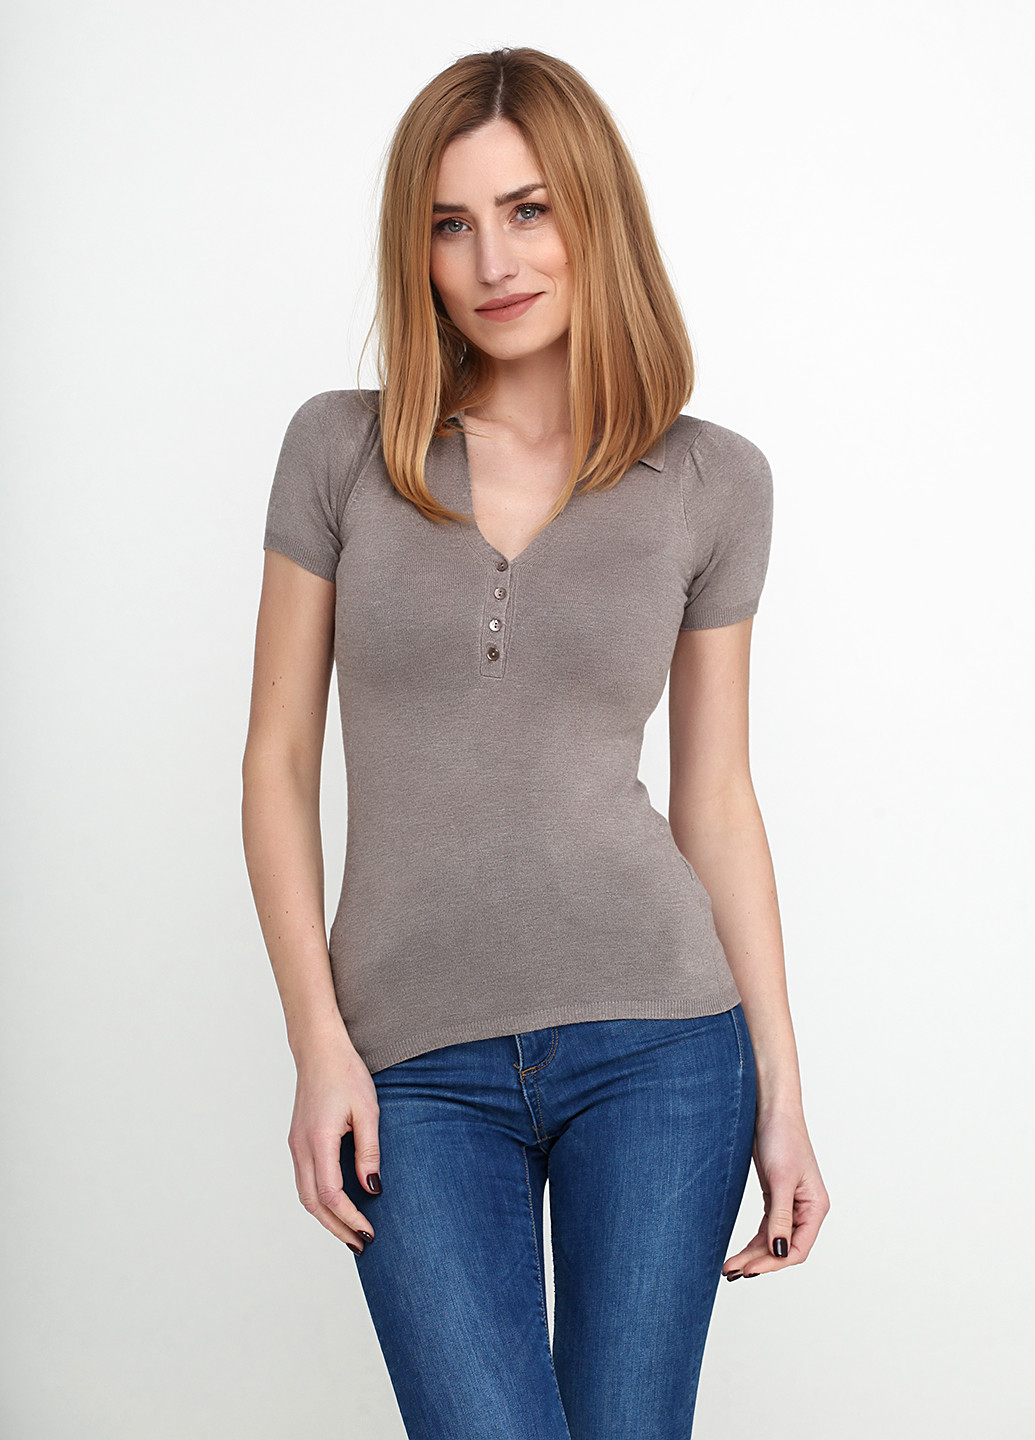 Светло-серая женская футболка-поло Zara